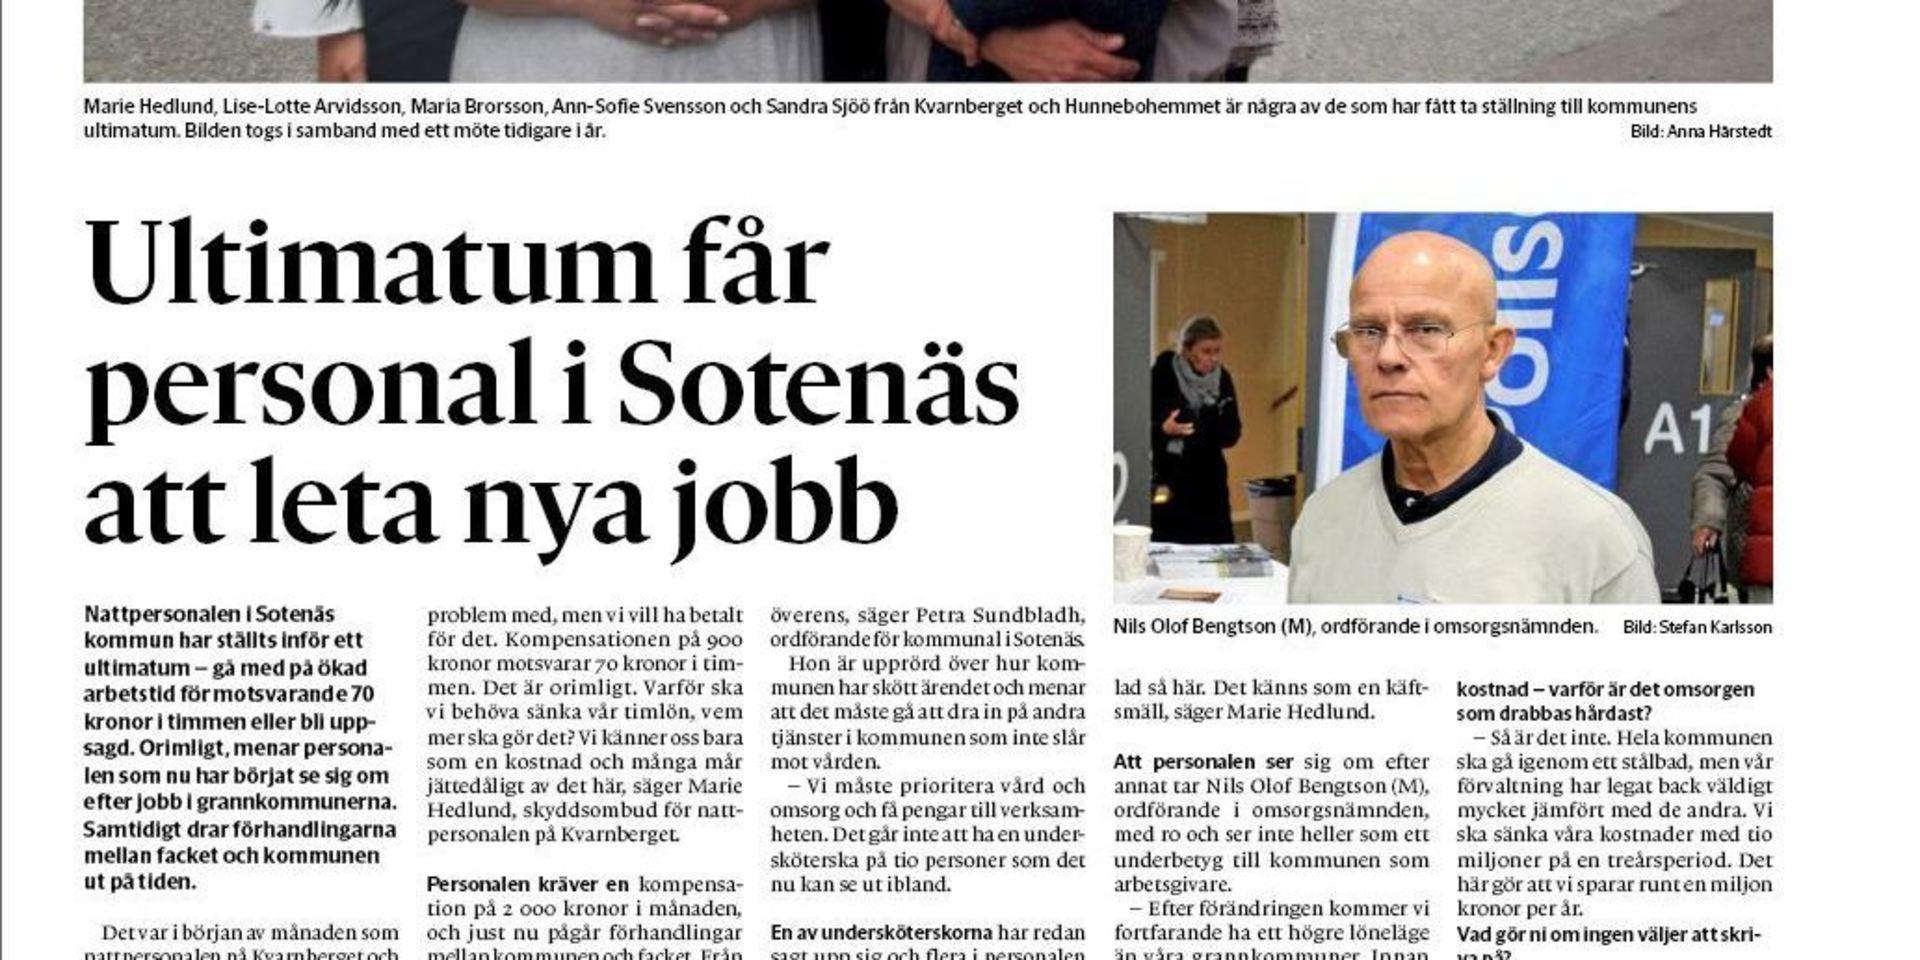 Bohusläningen har skrivit flera artiklar om utökad arbetstid för nattpersonal i Sotenäs. Nu har en insändarskribent blivit förbannad och kräver ansvarig politikers avgång. 